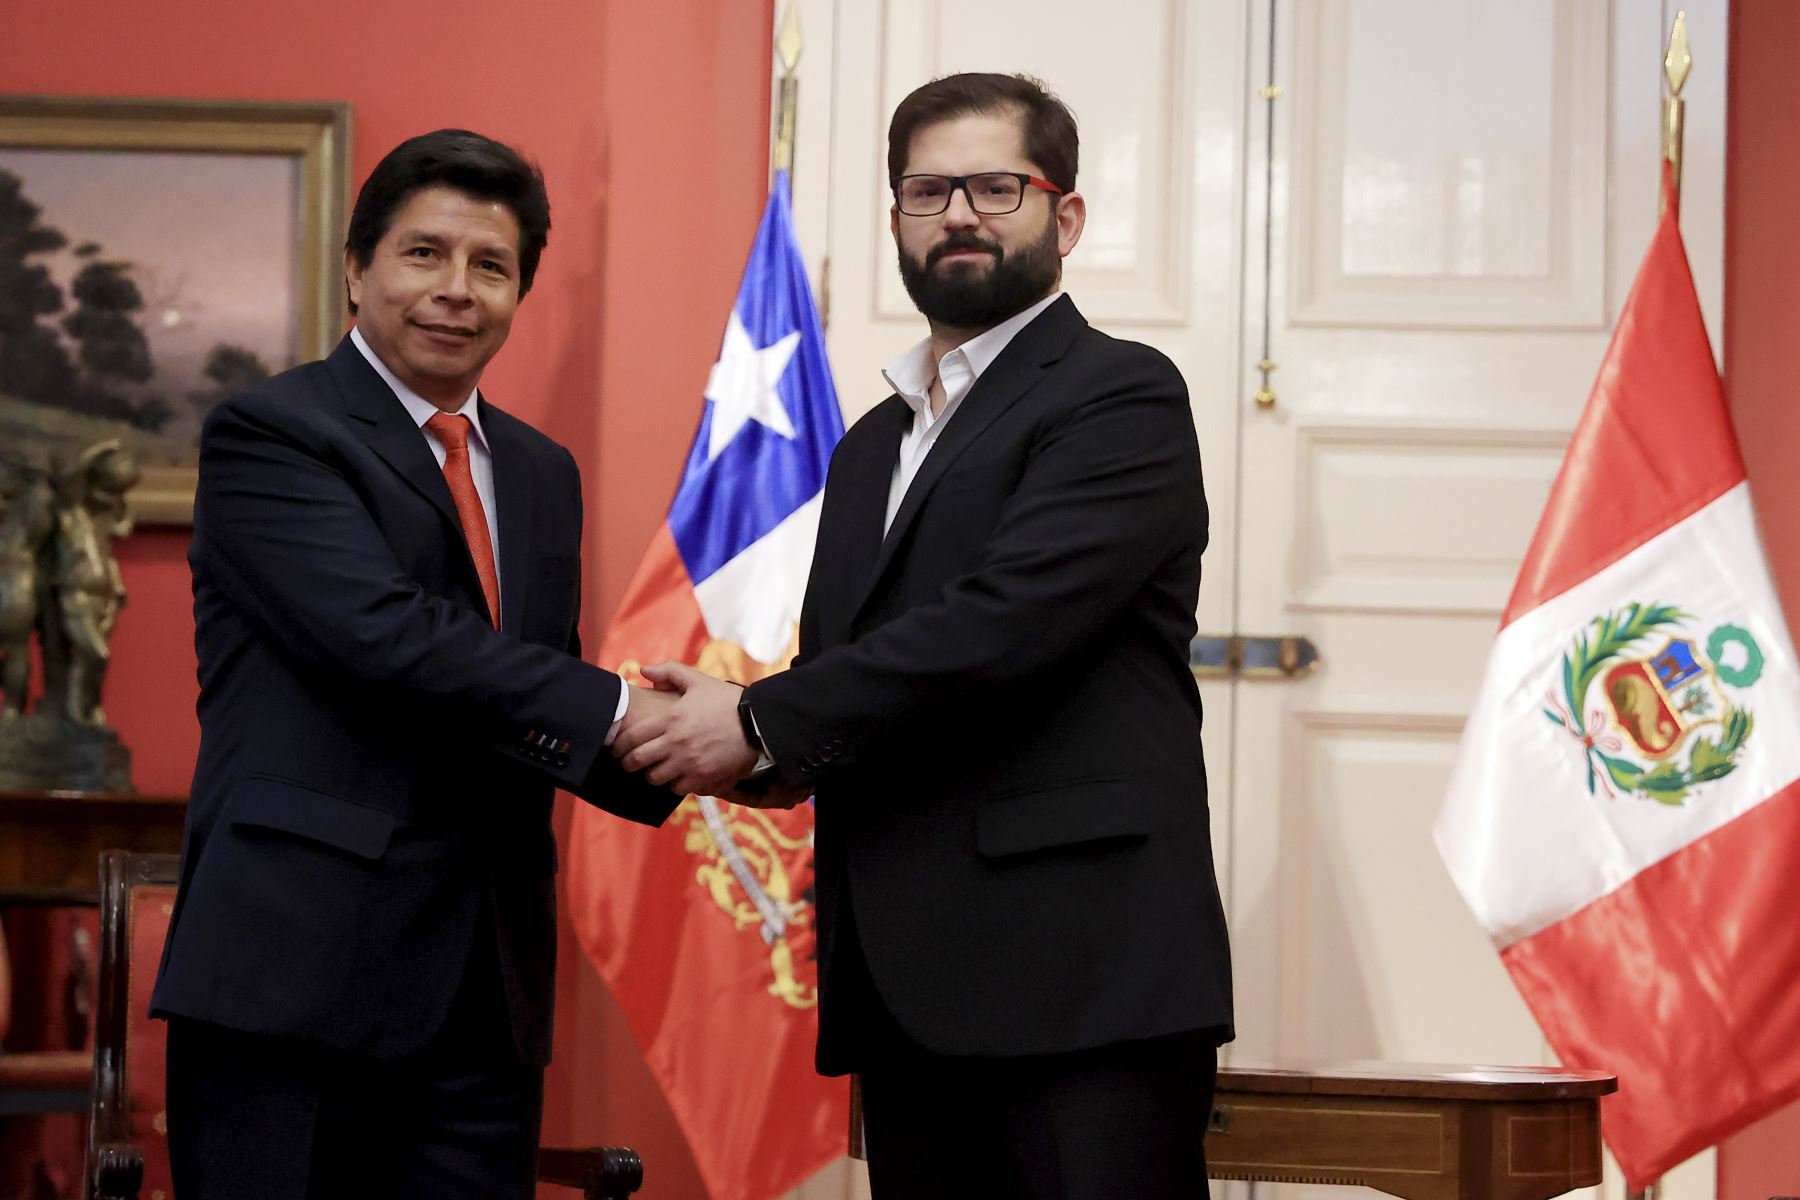 Presidente de la República, Pedro Castillo Terrones, sostiene reunión con el presidente de Chile, Gabriel Boric.

Foto: ANDINA/Prensa Presidencia